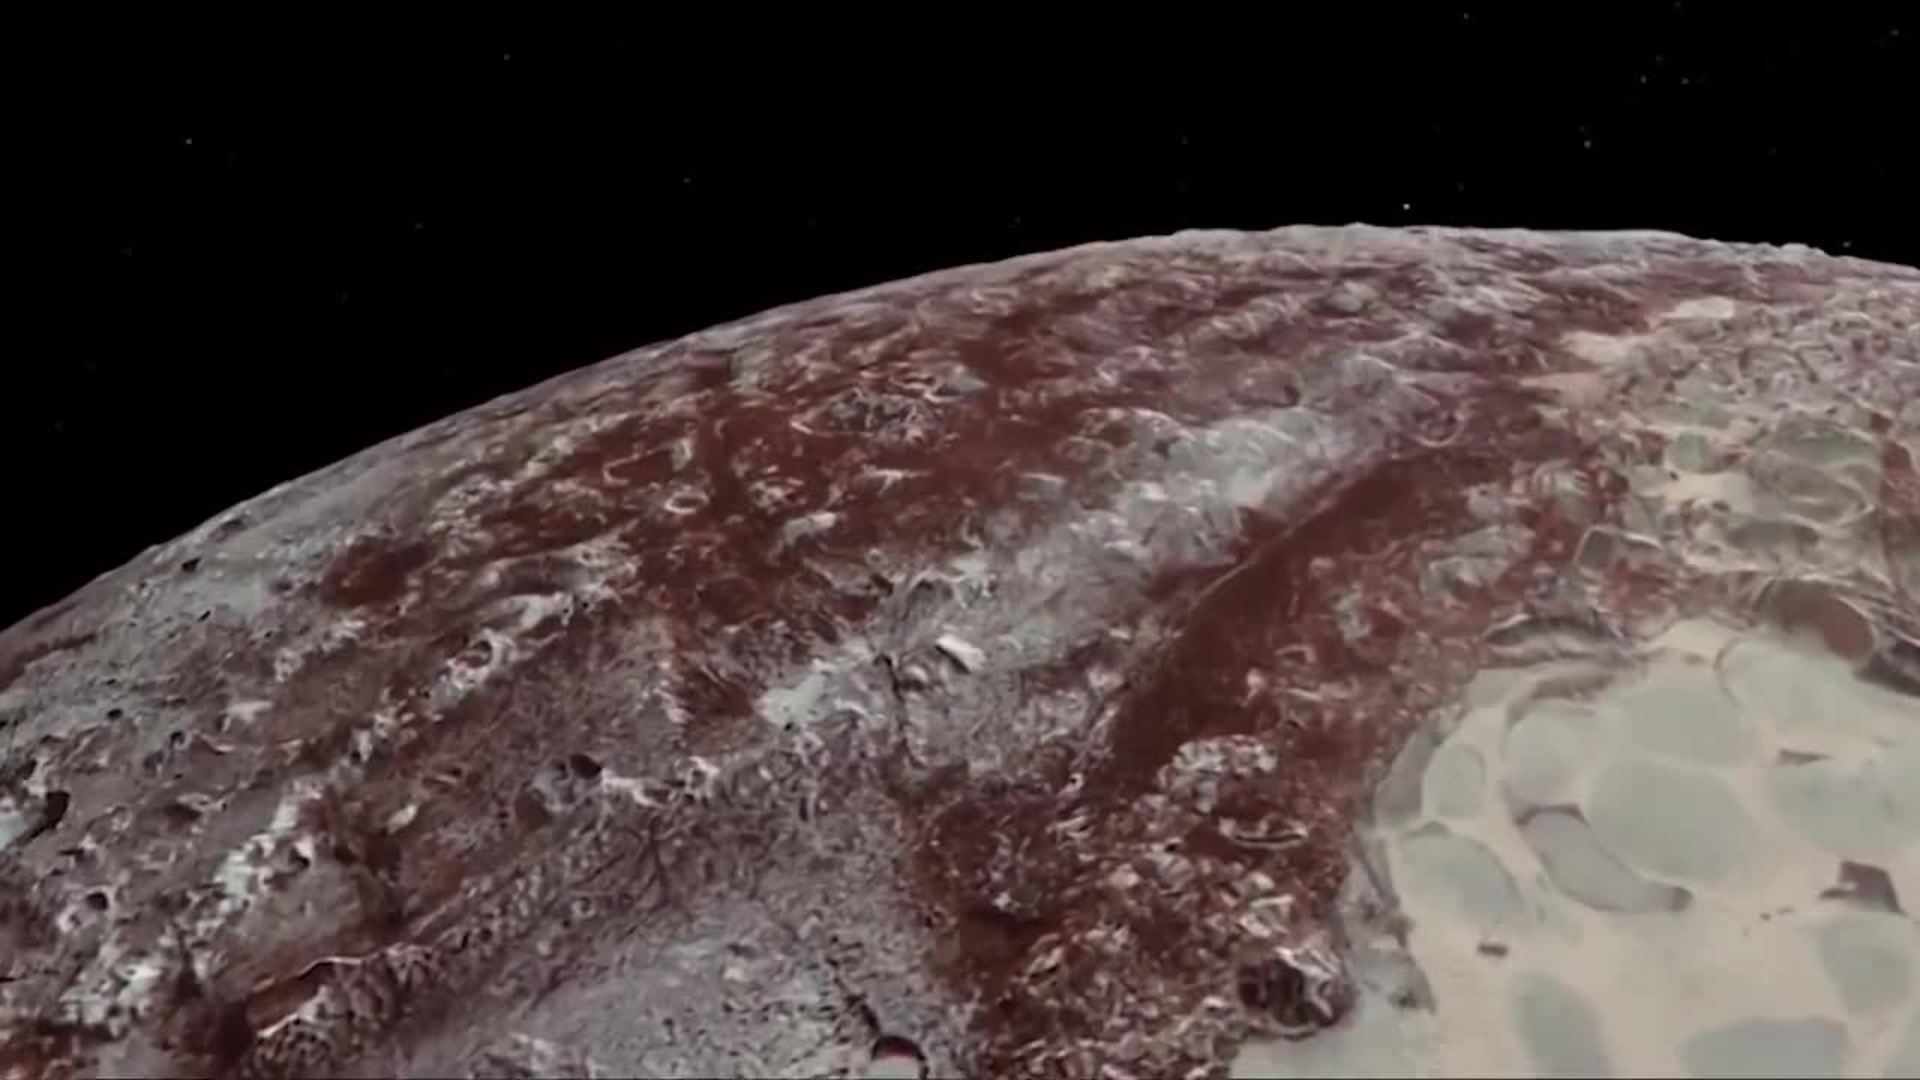 Se cumplen 92 años del descubrimiento de Plutón